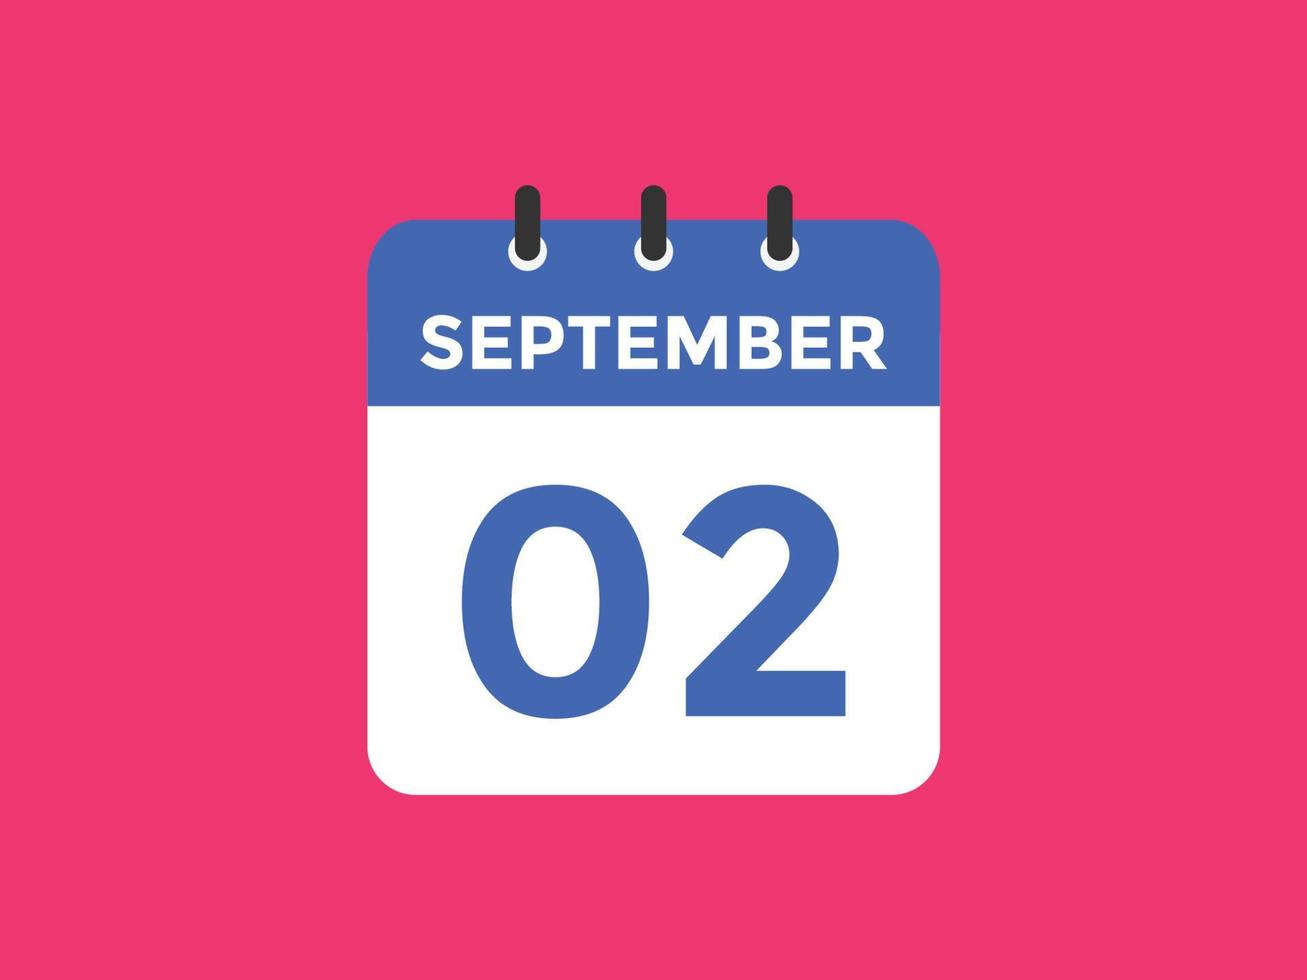 2. september kalendererinnerung. 2. september tägliche kalendersymbolvorlage. Kalender 2. September Icon-Design-Vorlage. Vektor-Illustration vektor